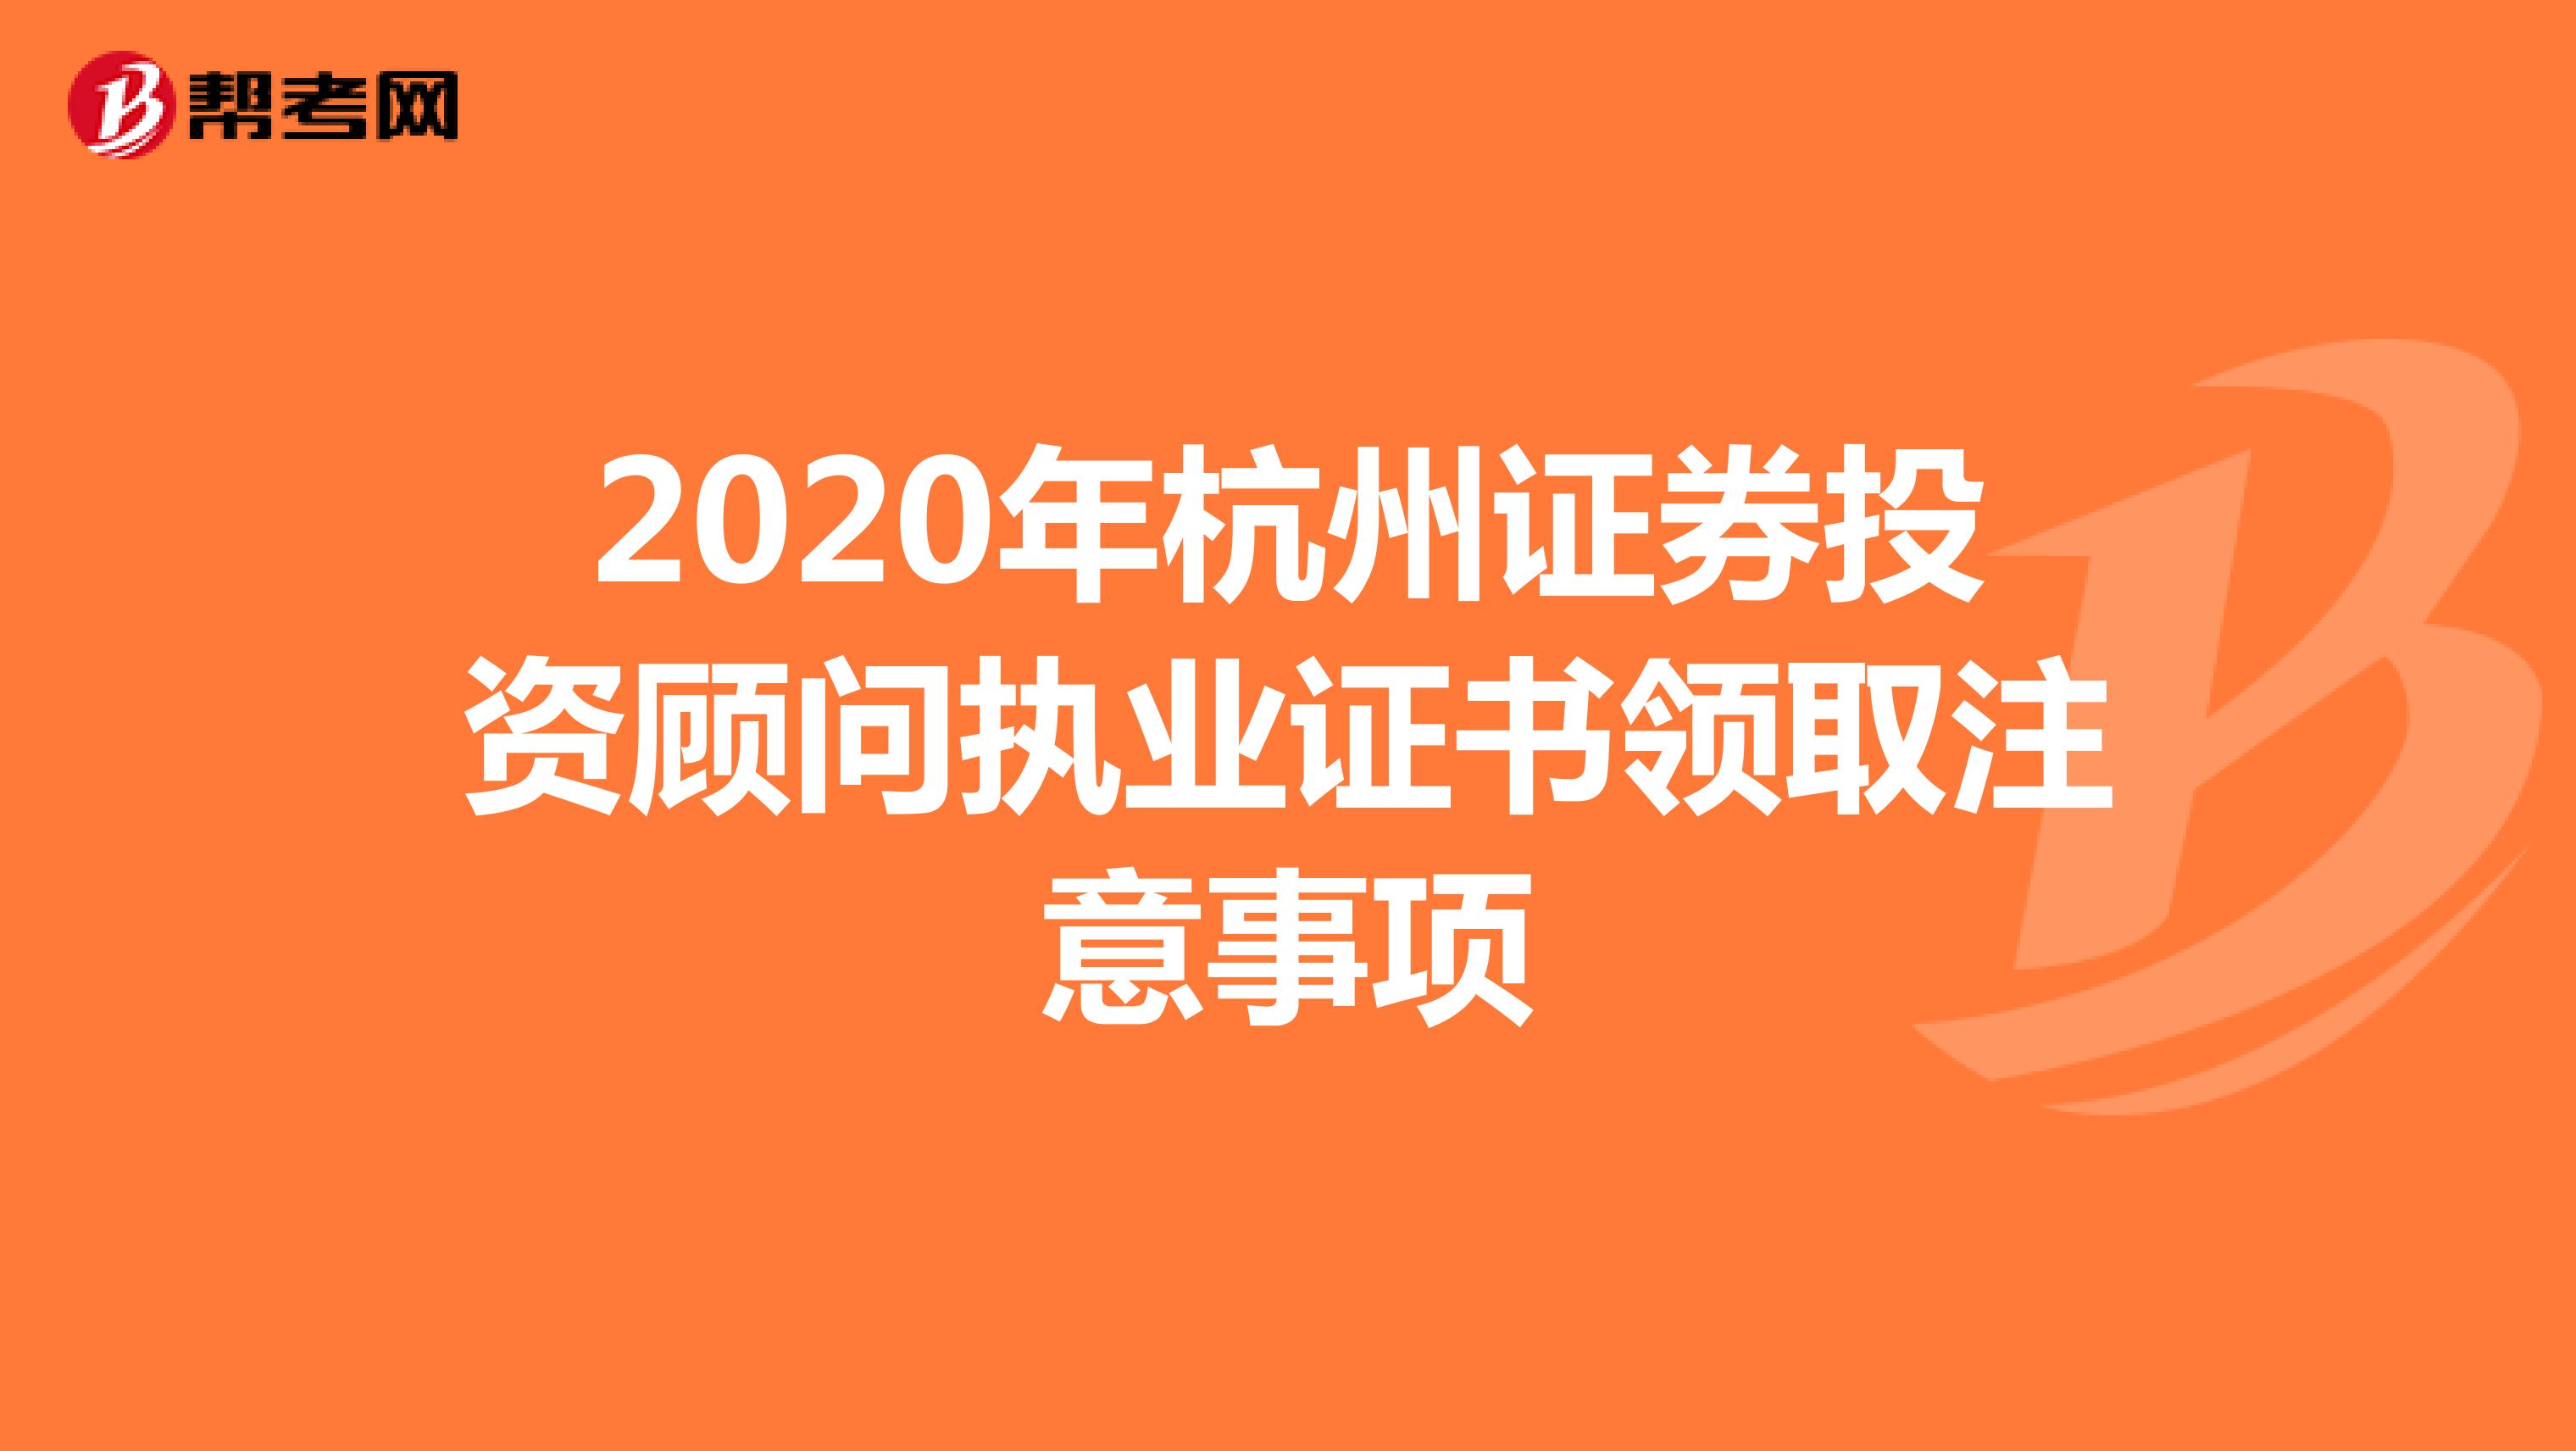 2020年杭州证券投资顾问执业证书领取注意事项